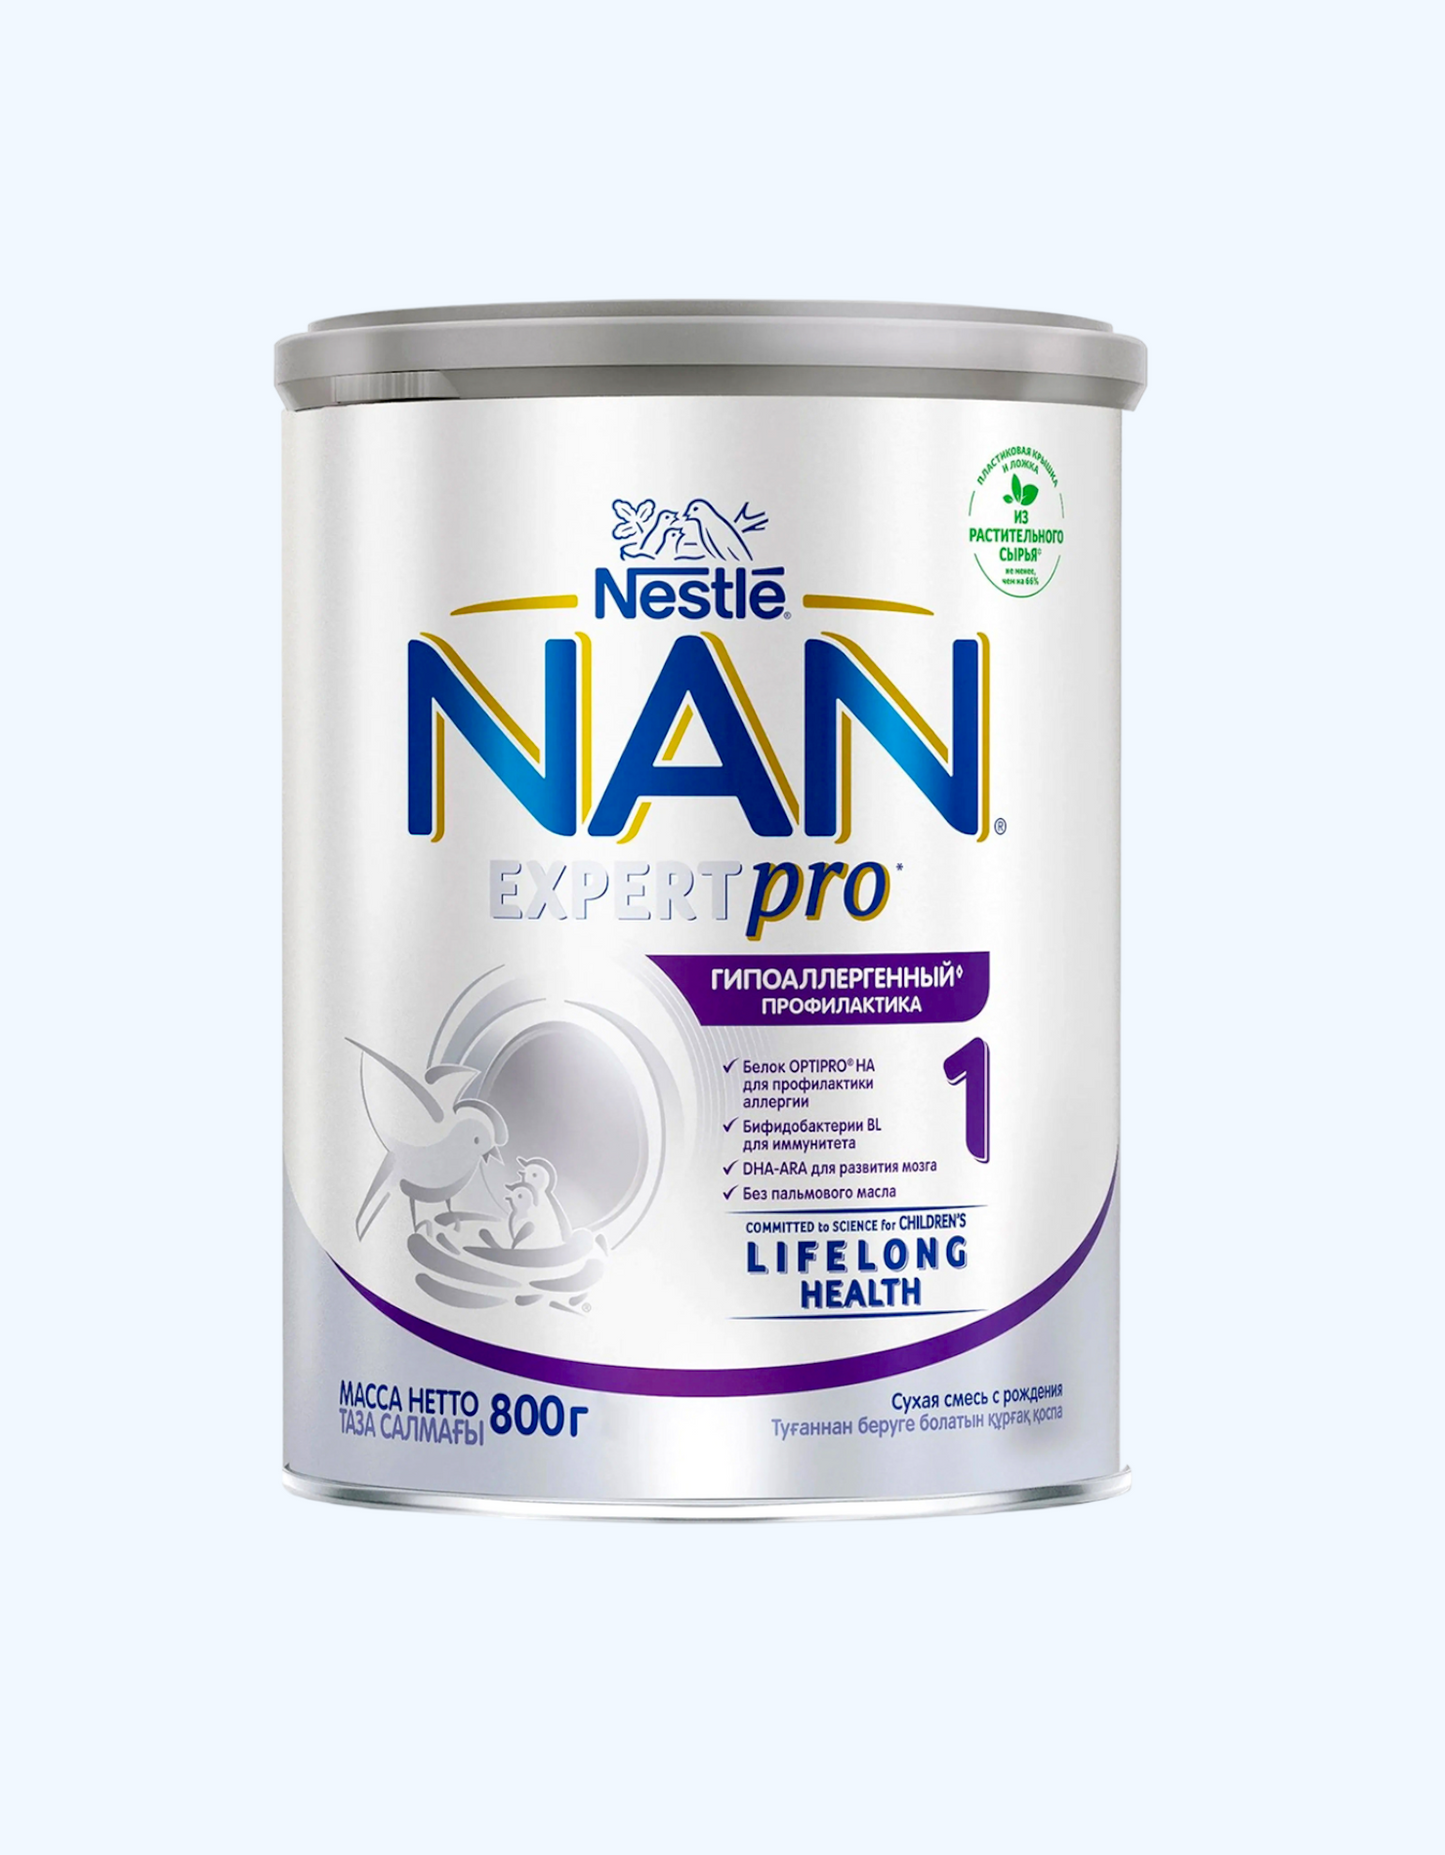 NAN 1 Expert Pro, гипоаллергенная профилактика, с рождения, 800 г